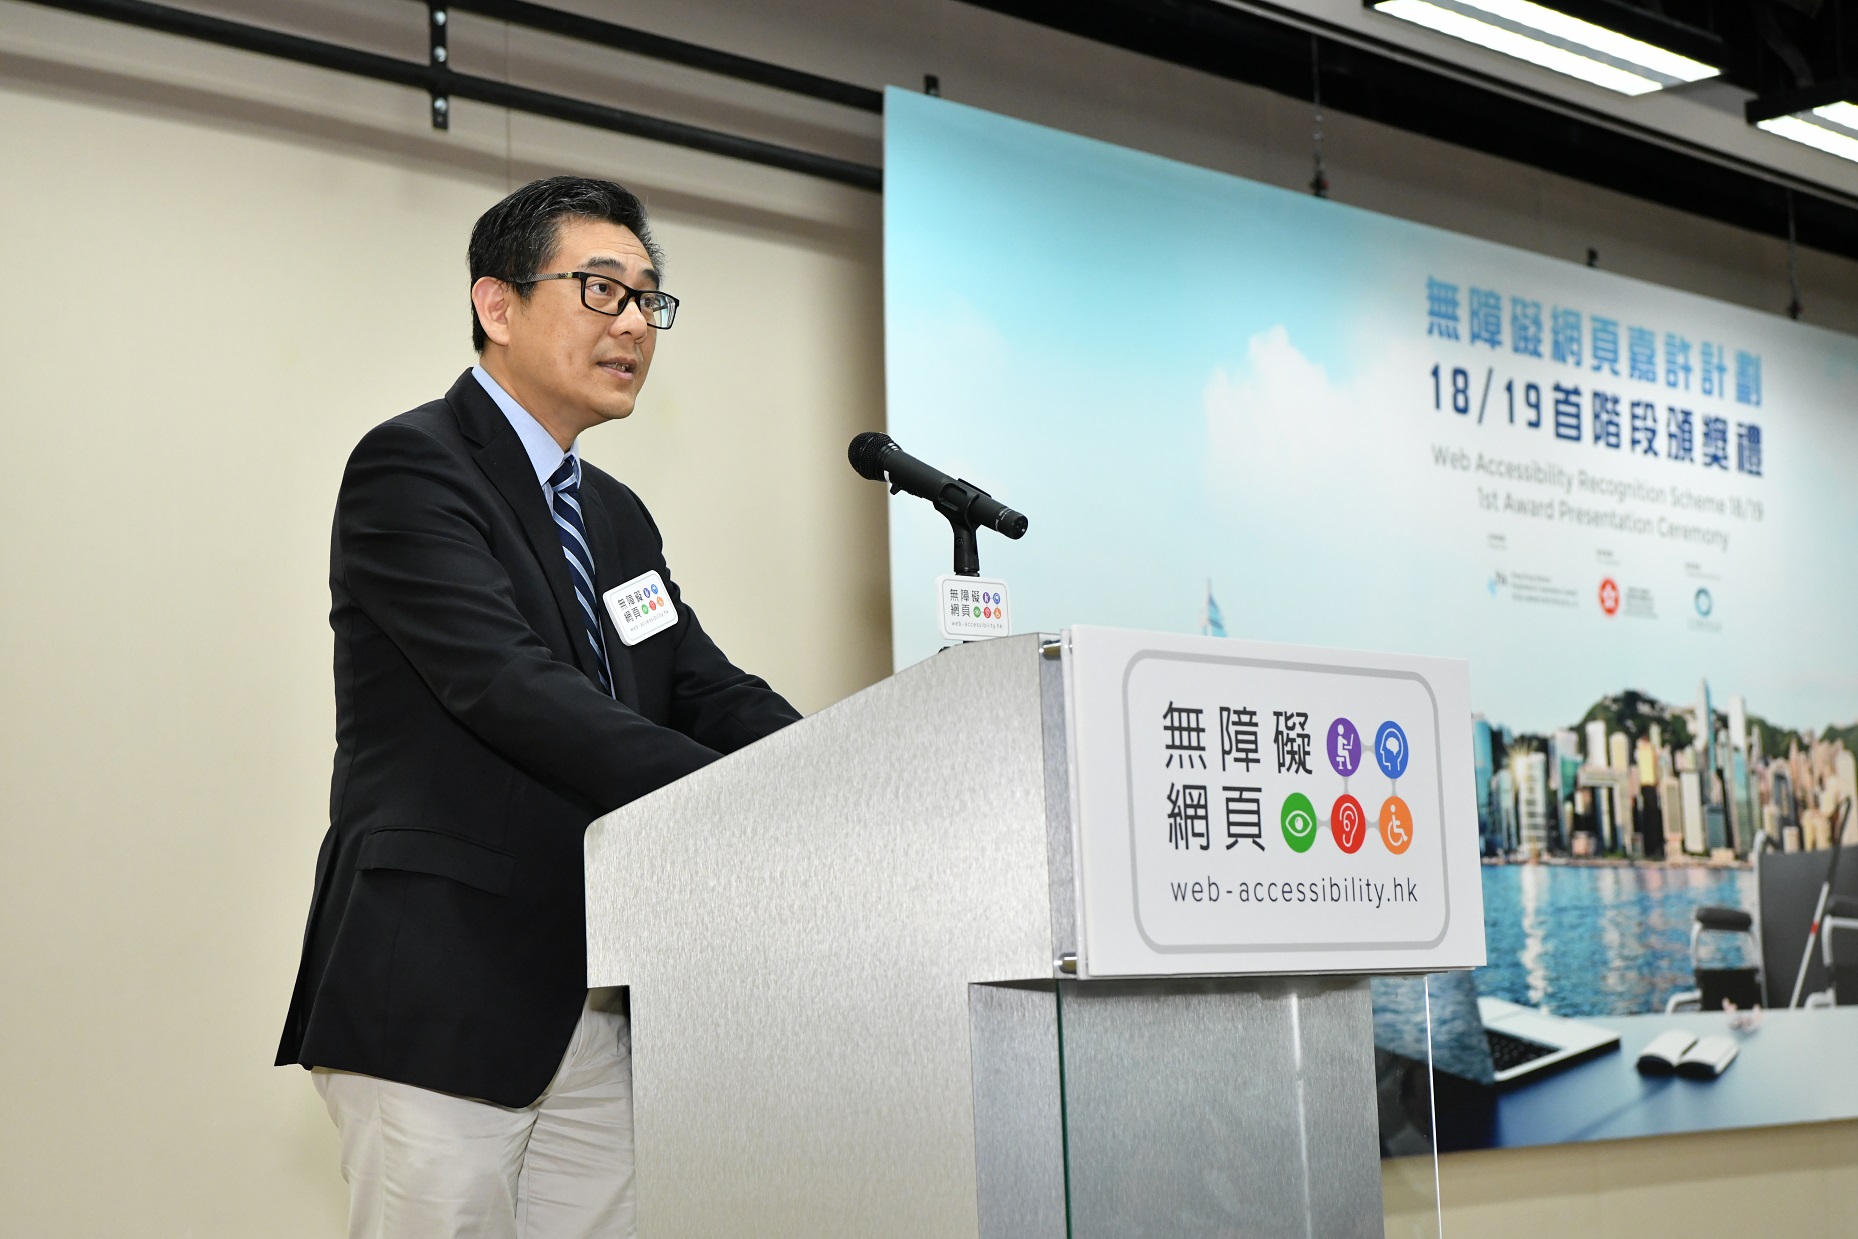 政府資訊科技總監楊德斌先生於「無障礙網頁嘉許計劃」18/19首階段頒獎禮致辭。